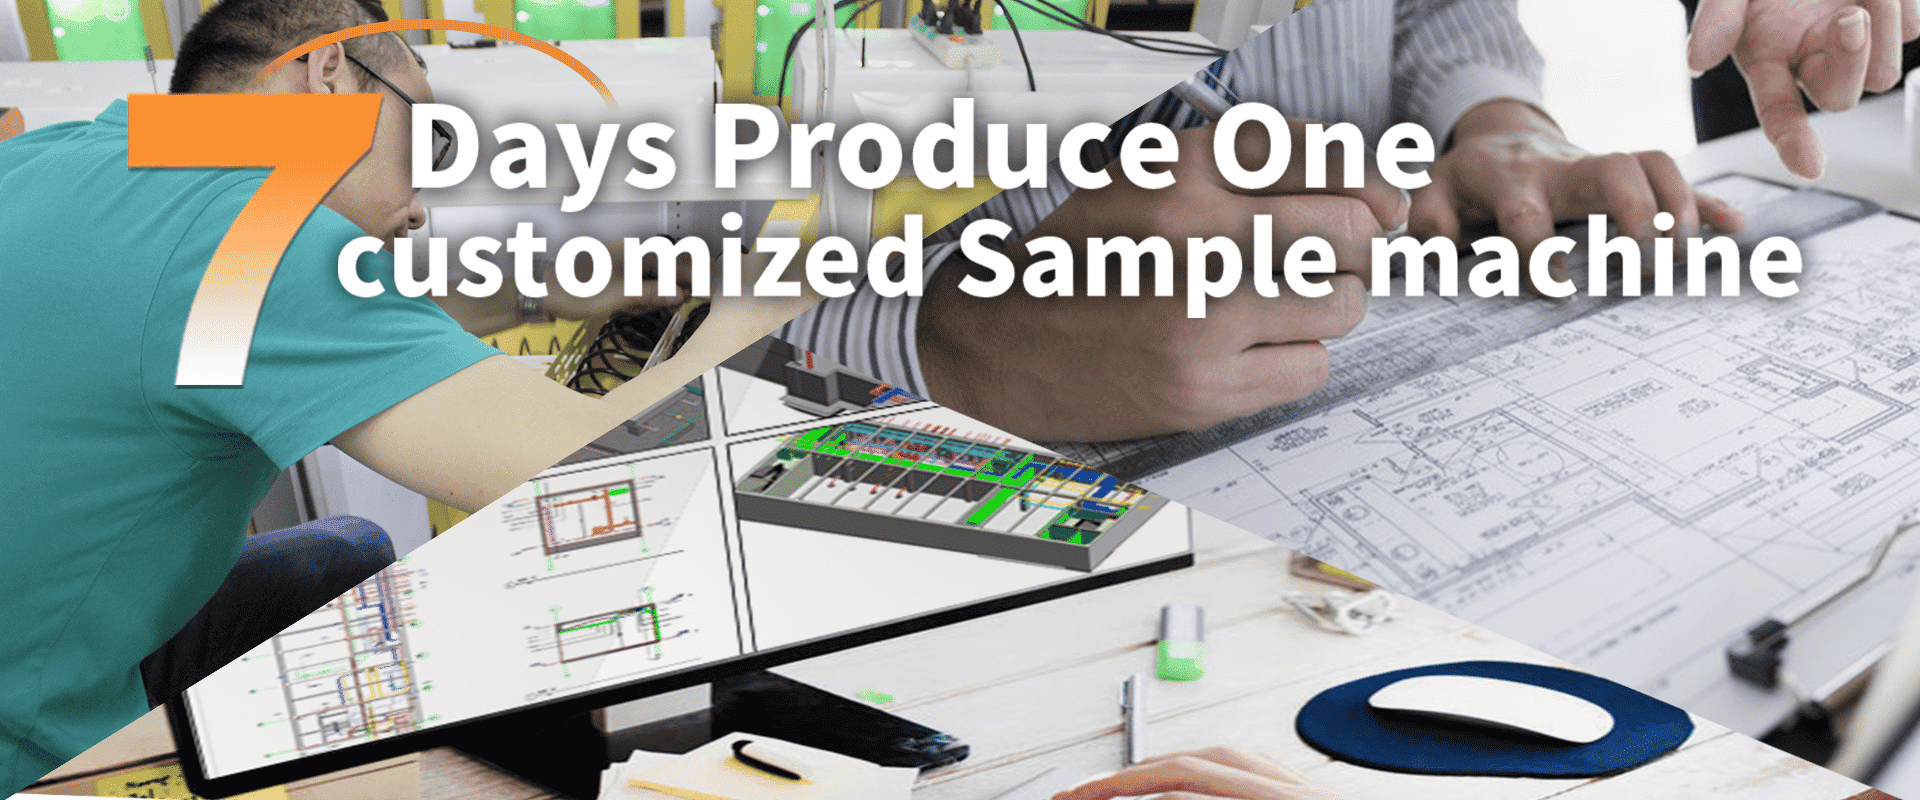 7 Days Produce One Customized Sample Machine